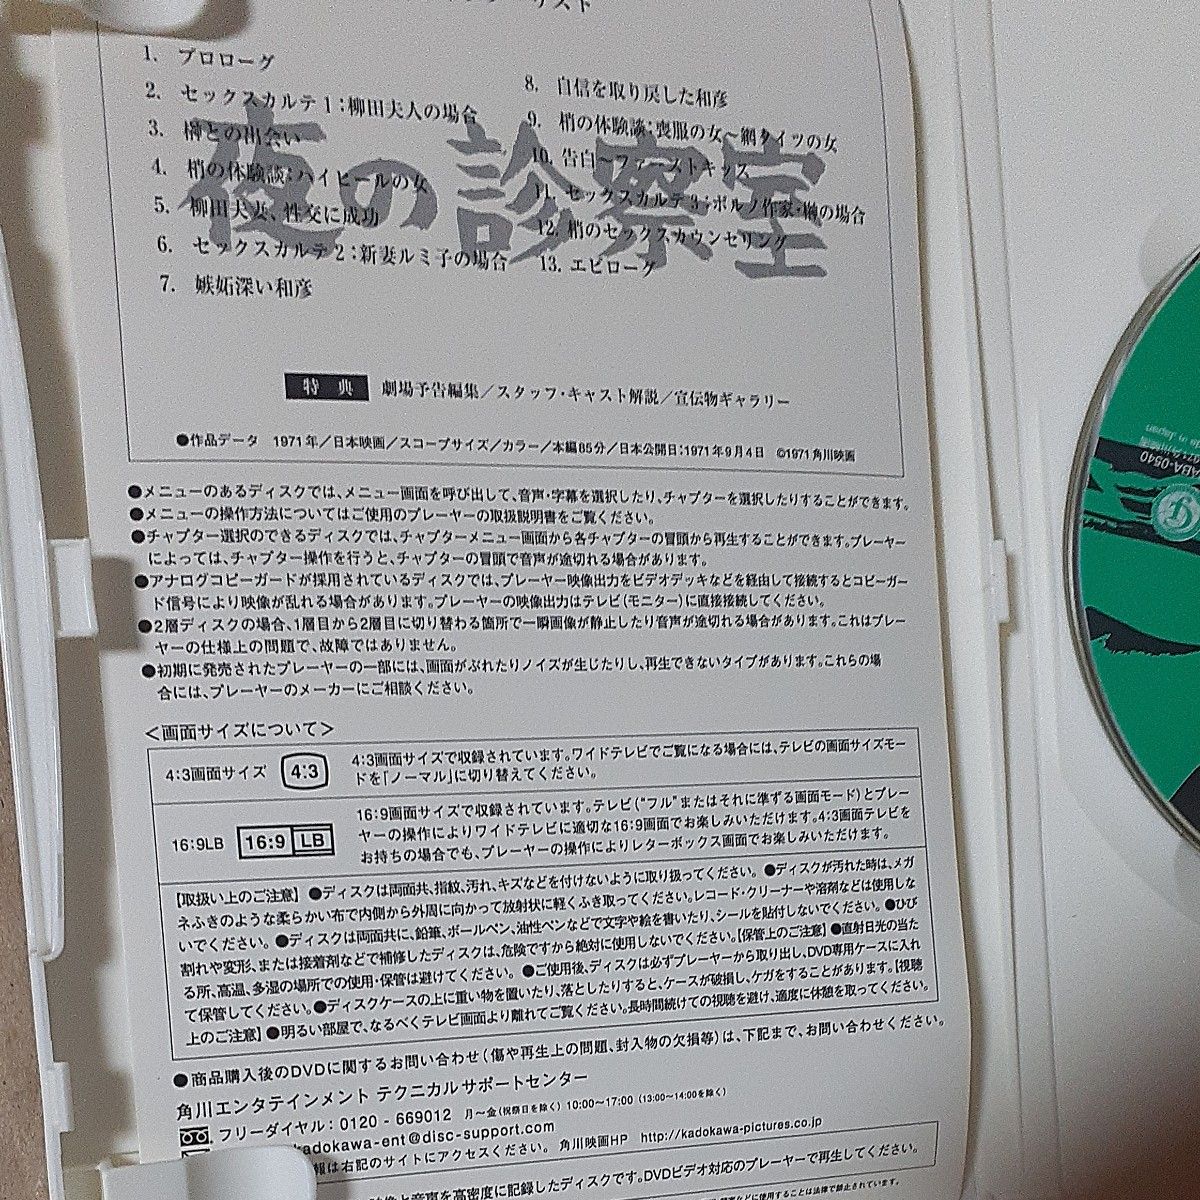 夜の診察室／松坂慶子峰岸隆之介帯盛迪彦 （監督） DVD